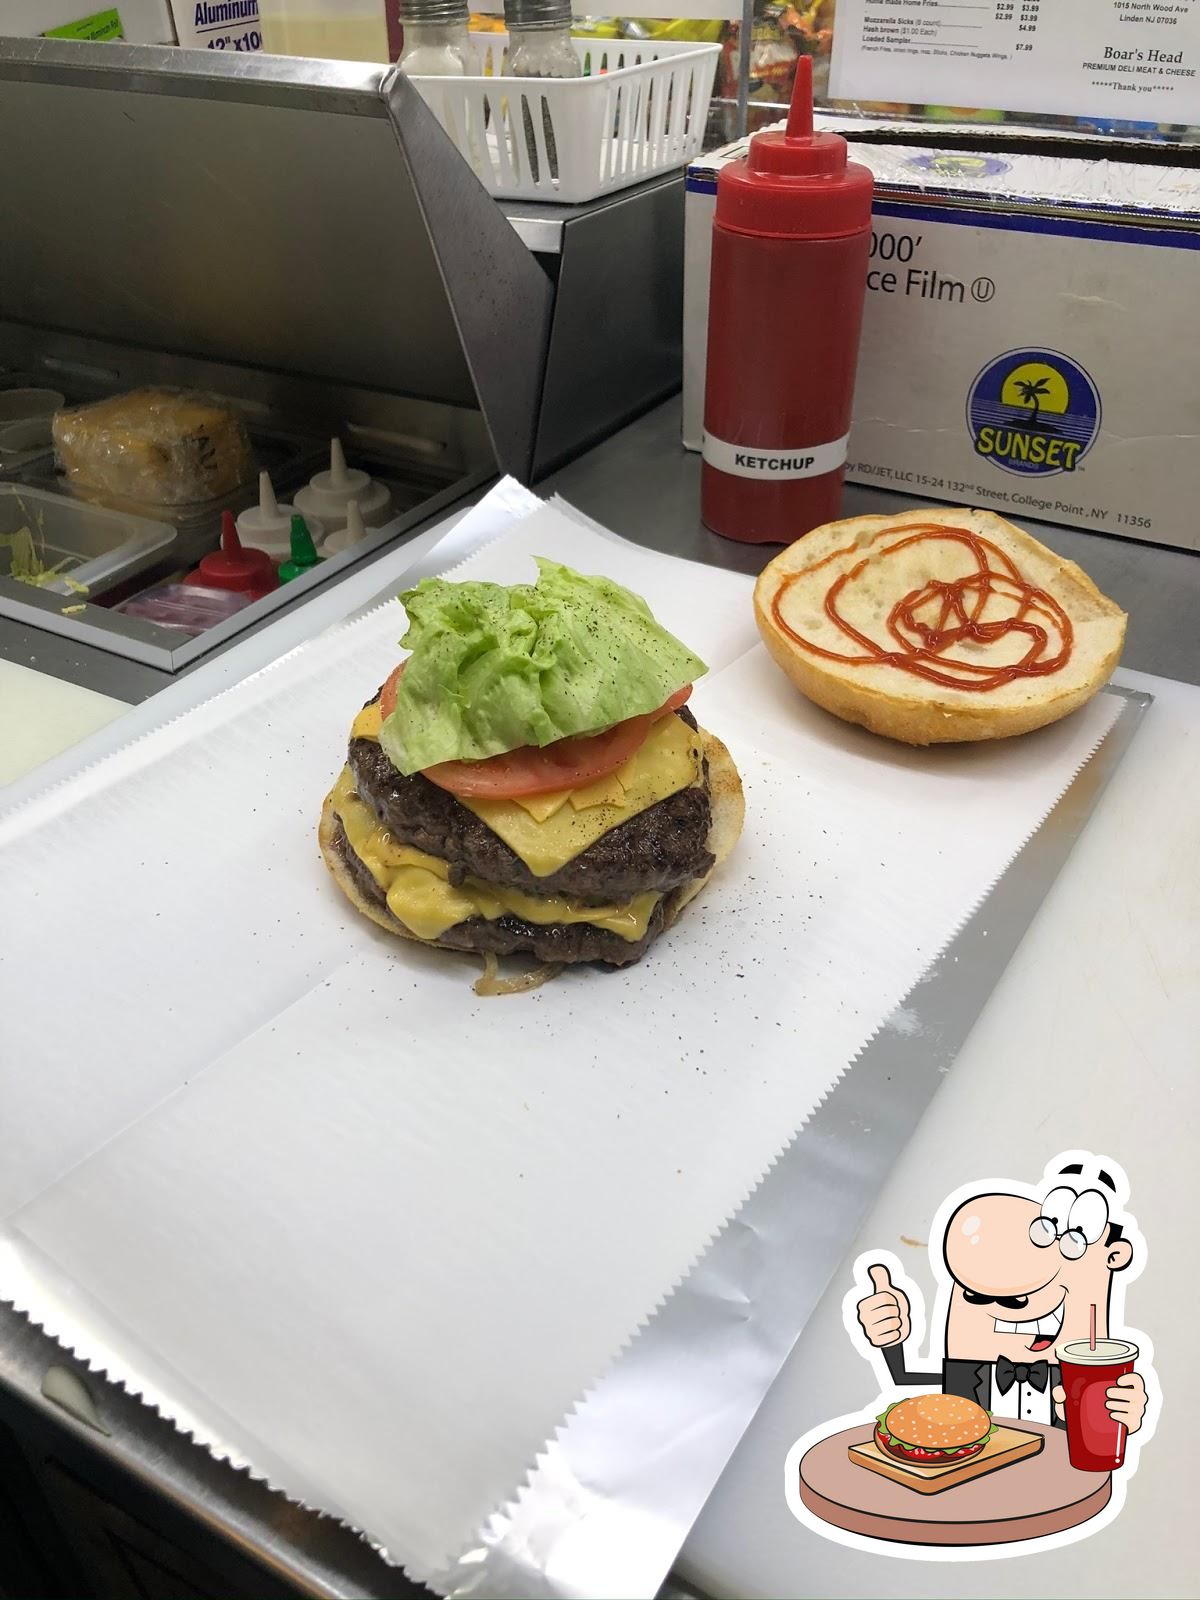 Cardápio – Patties Burger